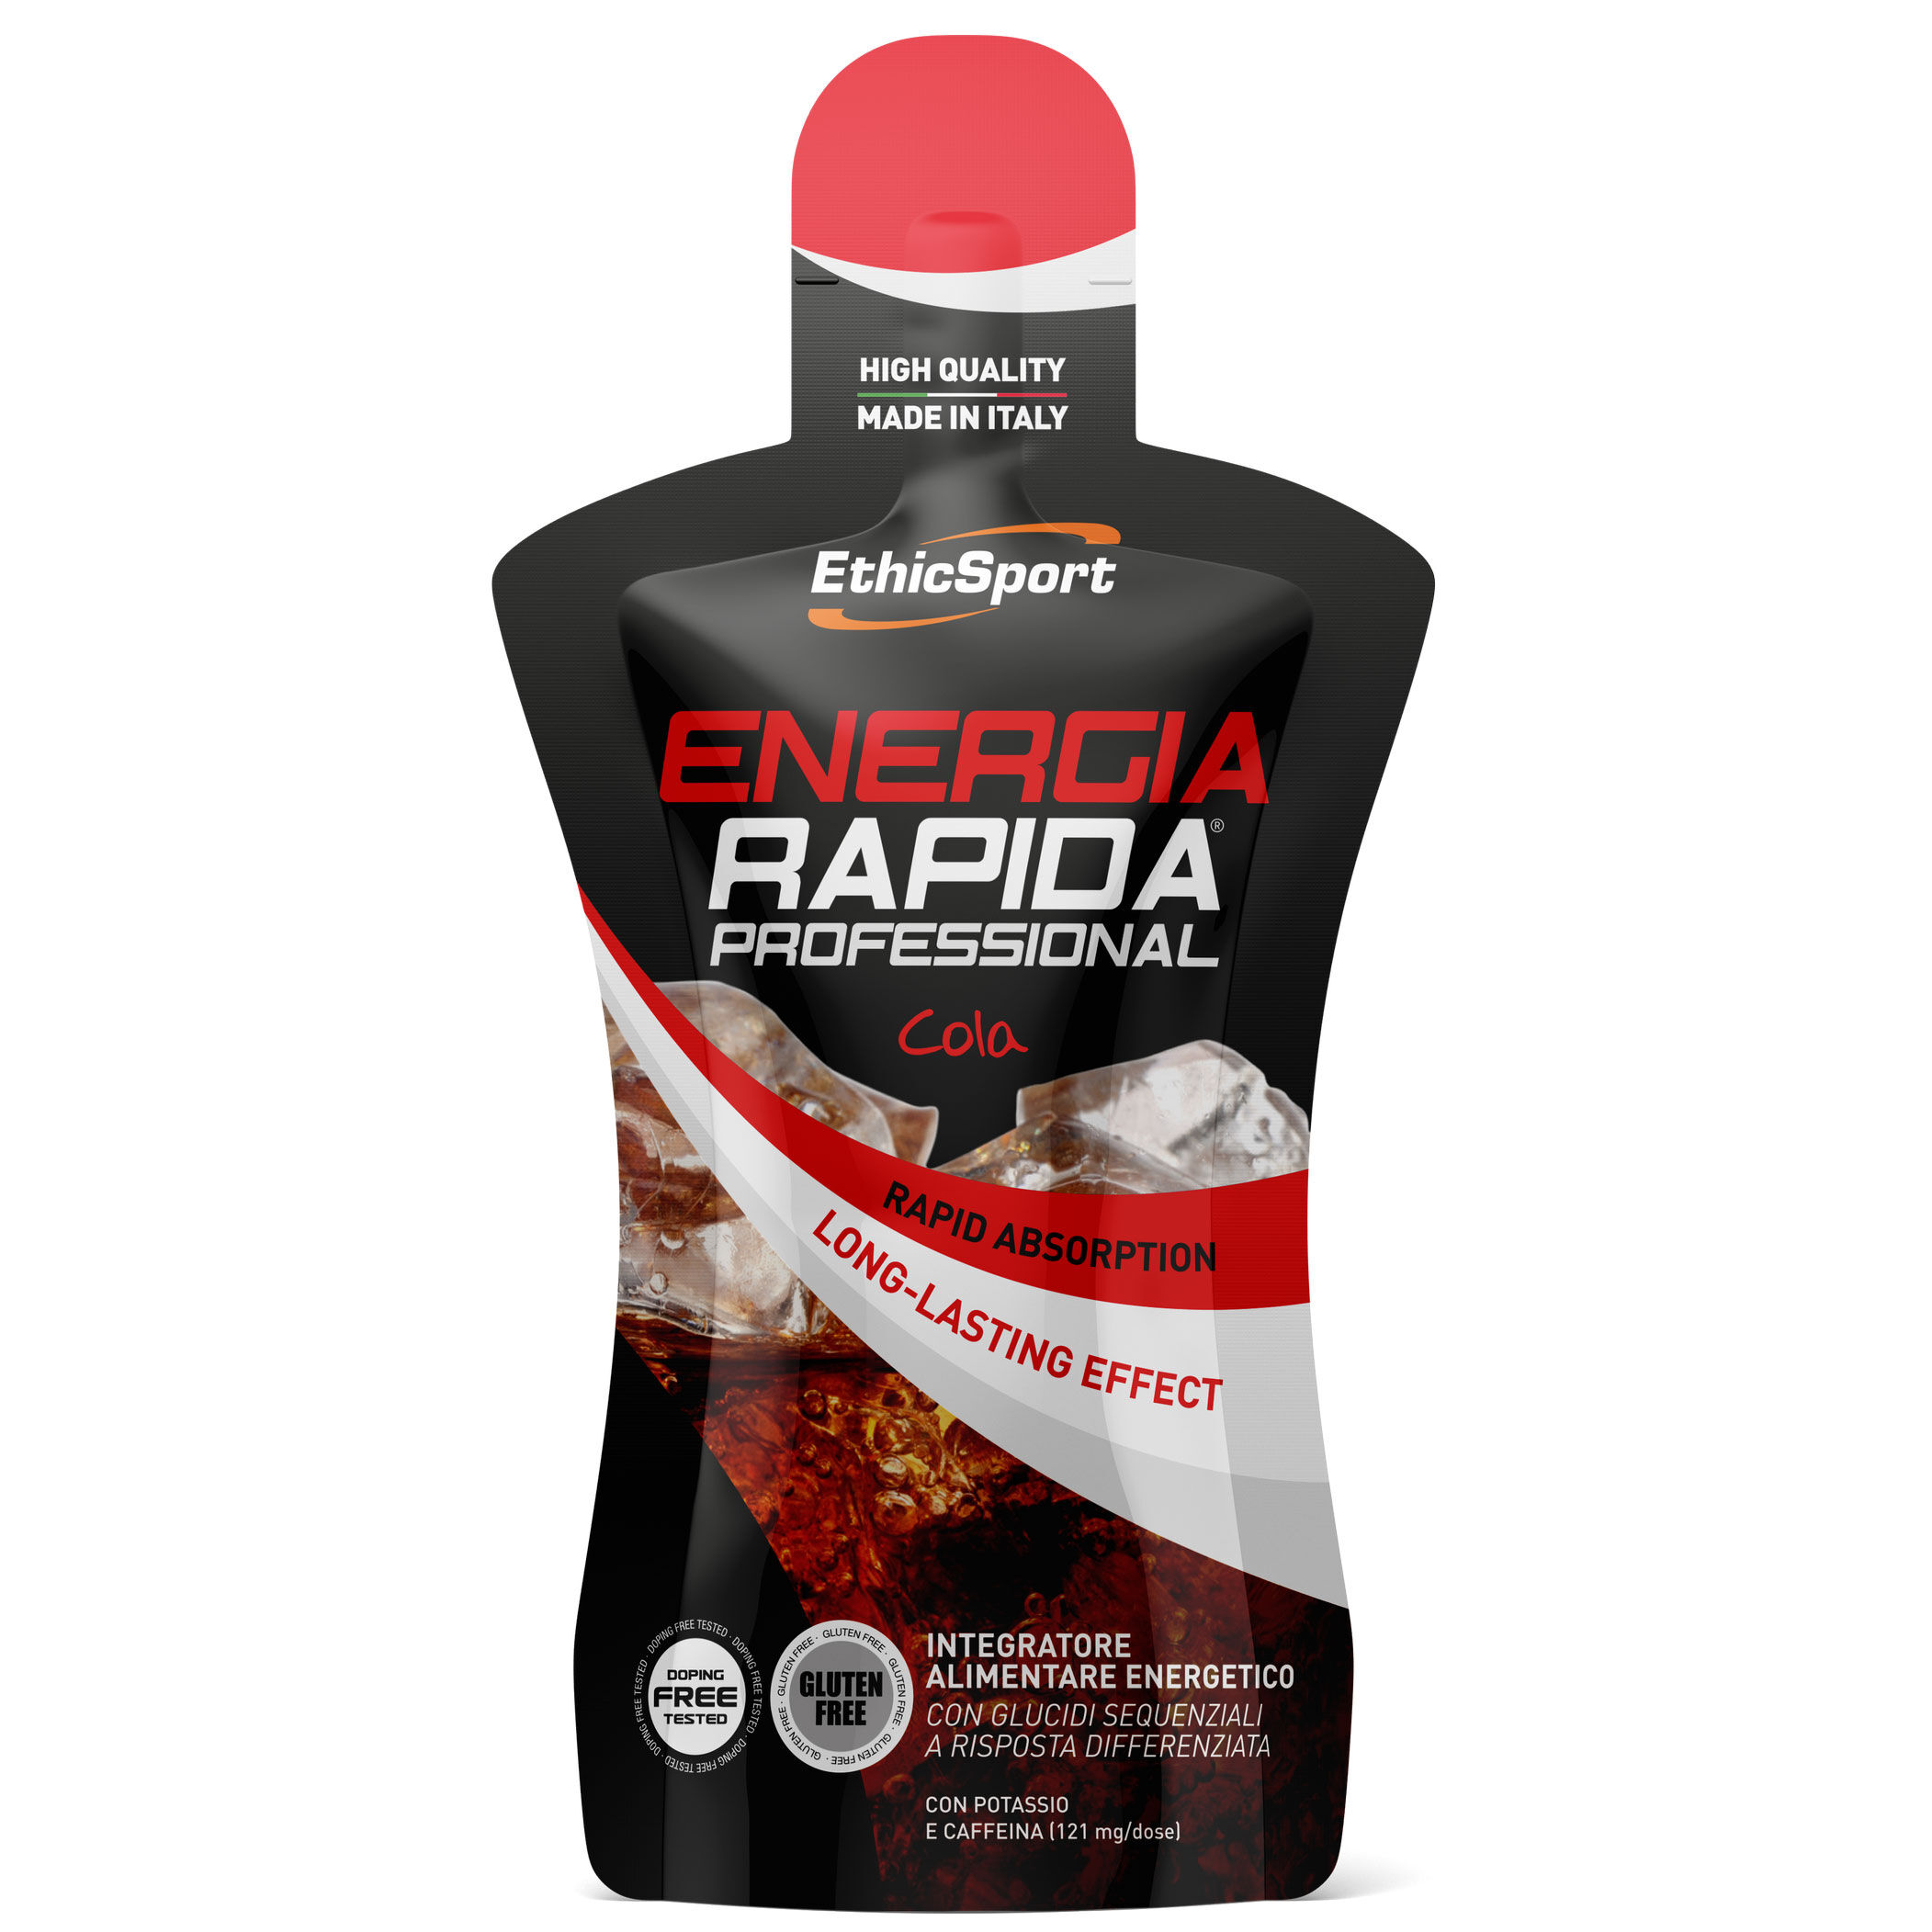 ETHICSPORT ENERGIA RAPIDA PROFESSIONAL Cola - Pack 50 ml.  